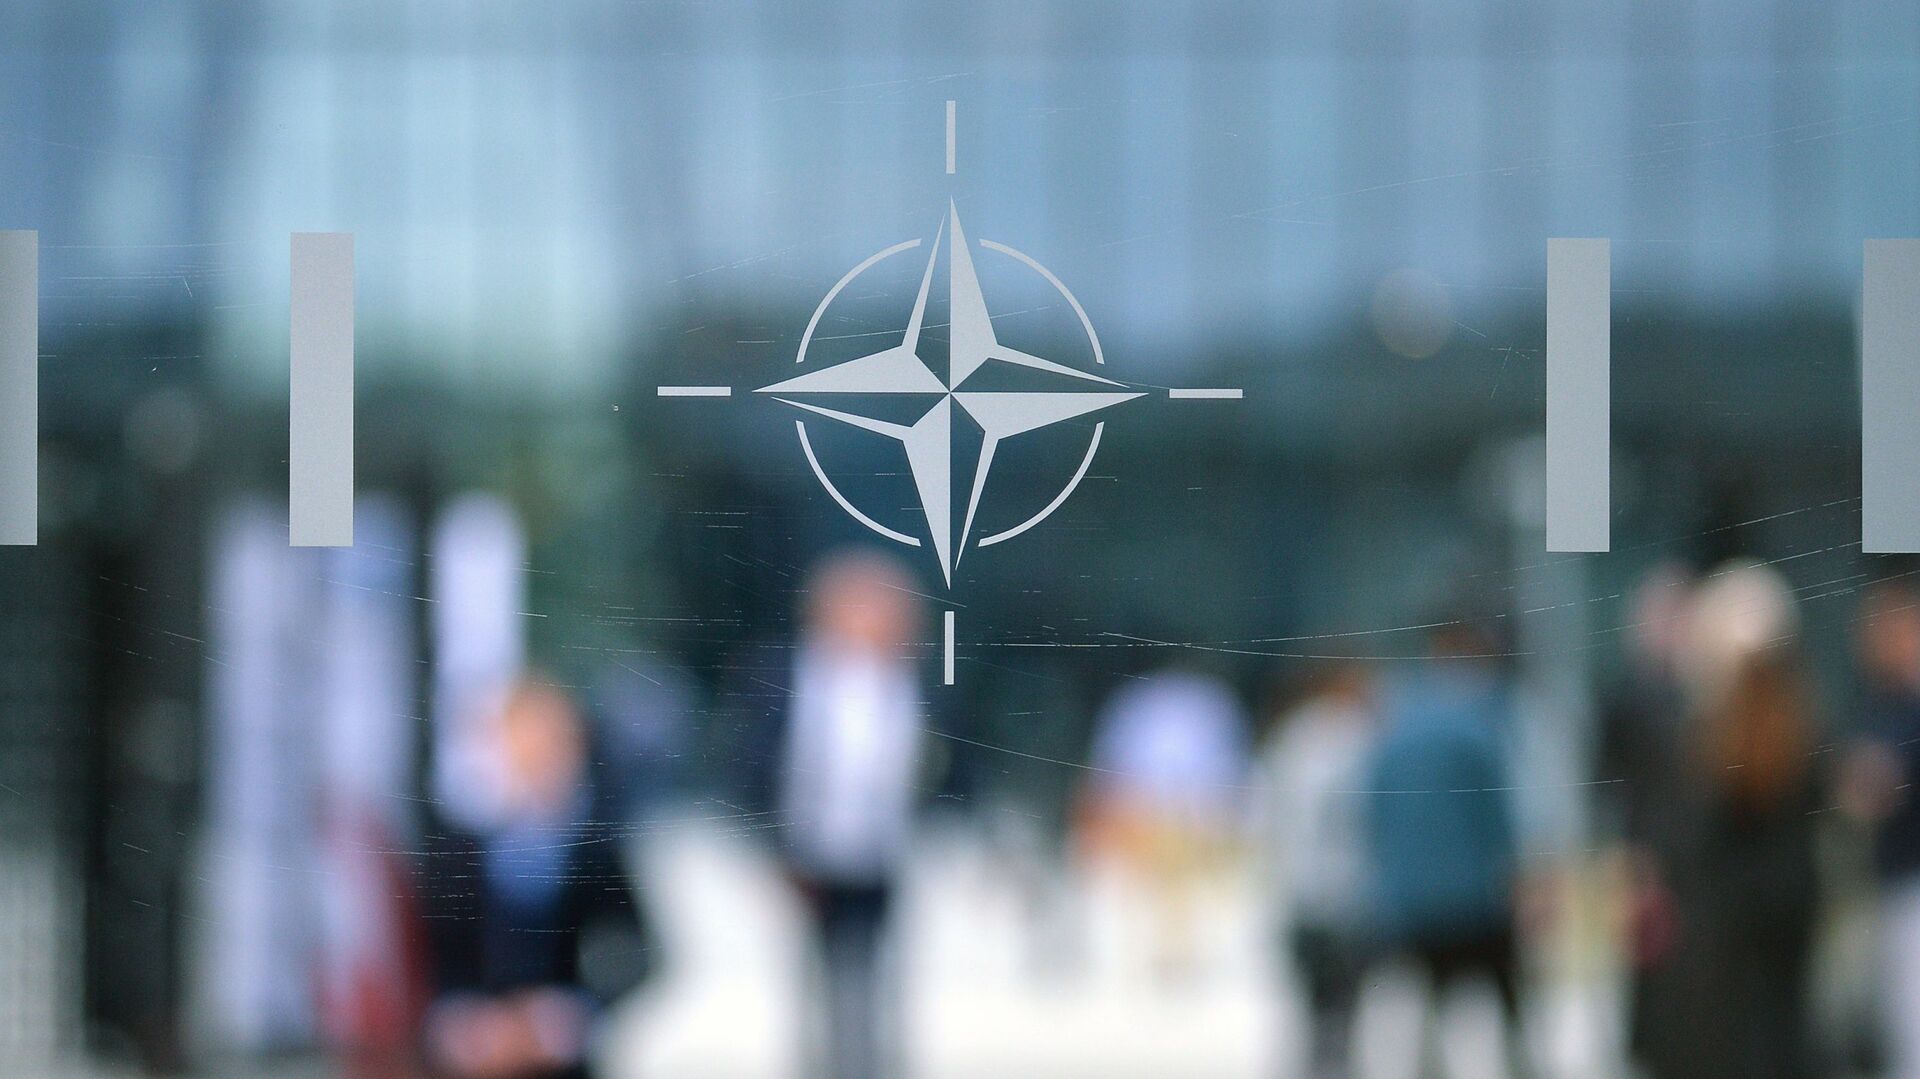 Эмблема Организации Североатлантического договора (НАТО) в Брюсселе.   - Sputnik Абхазия, 1920, 18.07.2022